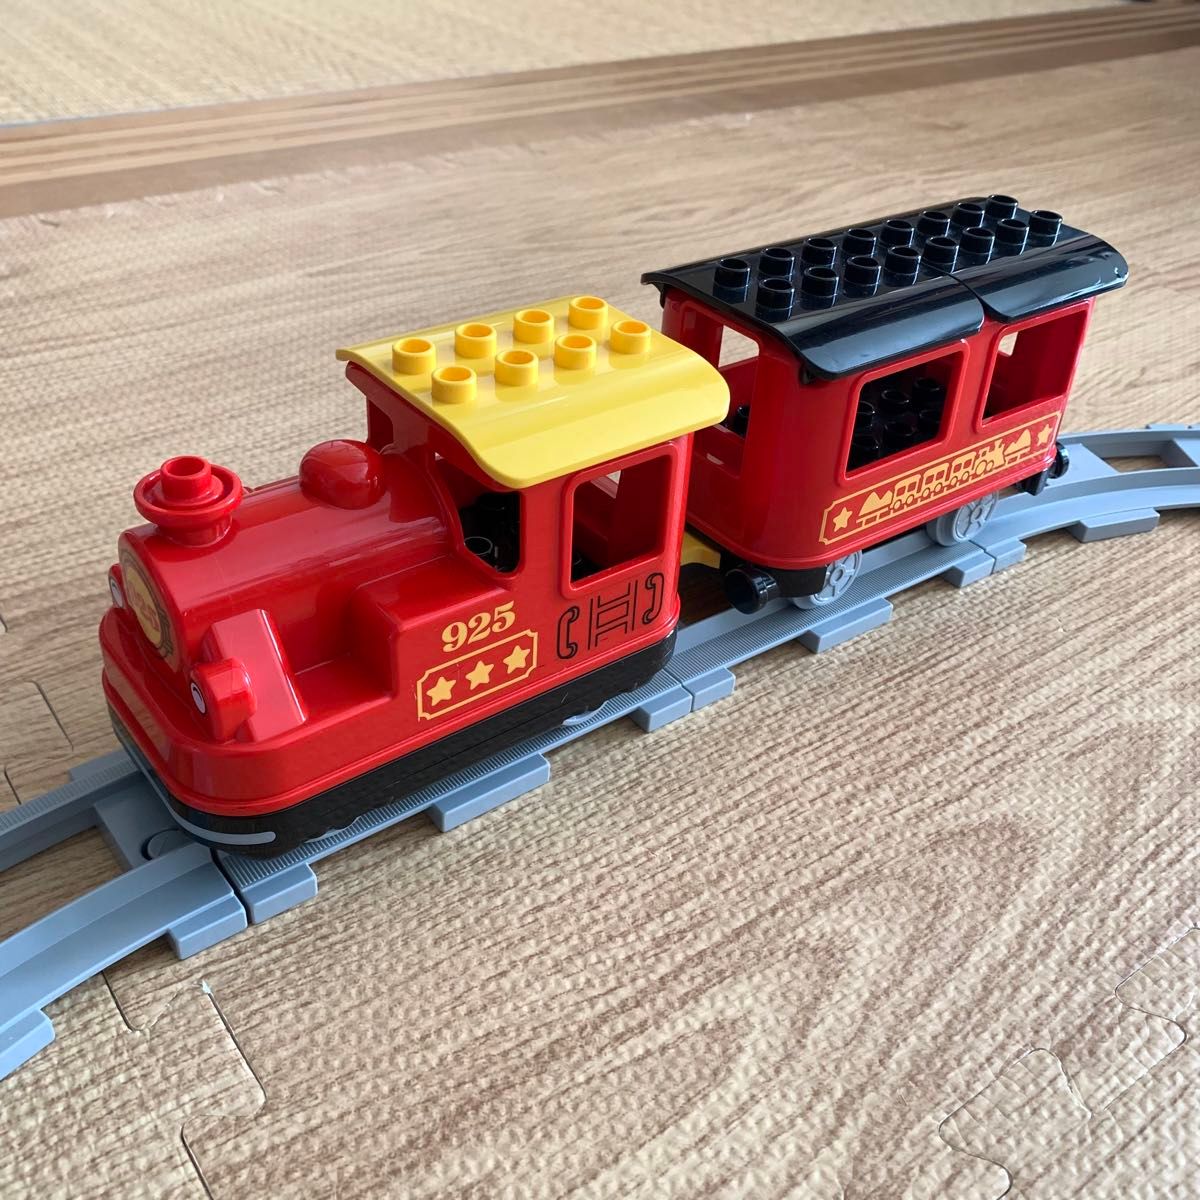 LEGO キミが車掌さん! おしてGO機関車デラックス 「レゴ デュプロ」